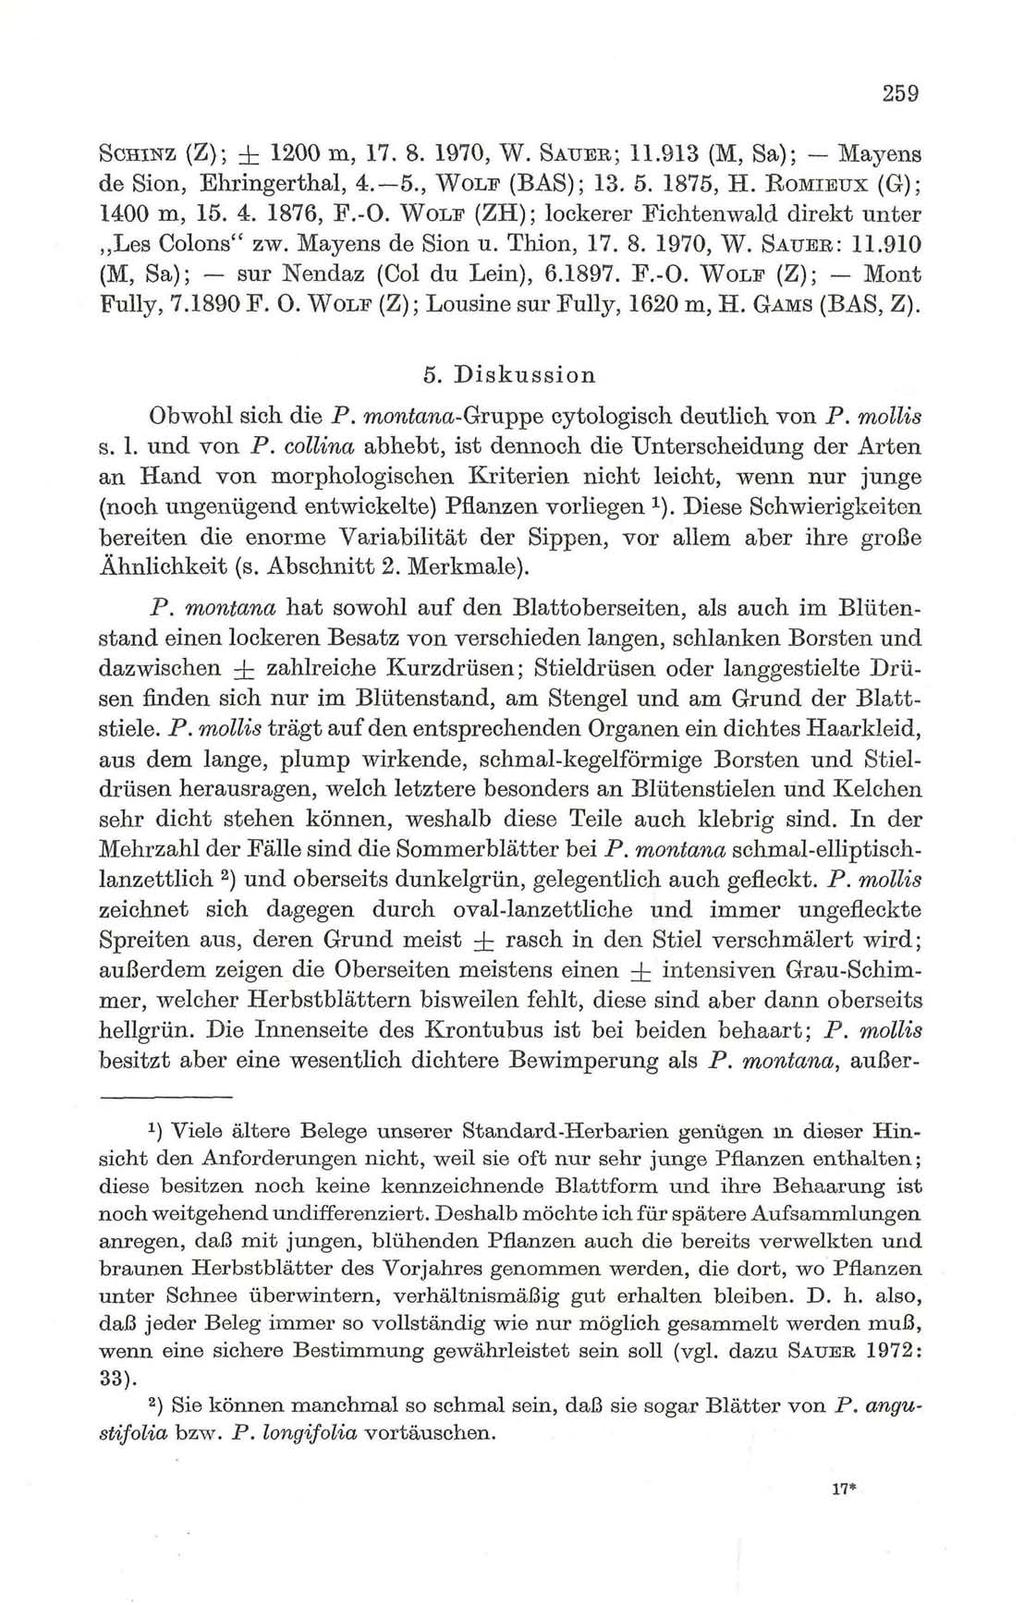 259 (Z); ± 1200 m, 17. 8. 1970, W. SATTER; 11.913 (M, Sa); - Mayens de Sion, Ehringerthal, 4.-5., WOLF (BAS); 13. 5. 1875, H. ROMIBXJX (G); 1400 m, 15. 4. 1876, F.-O.